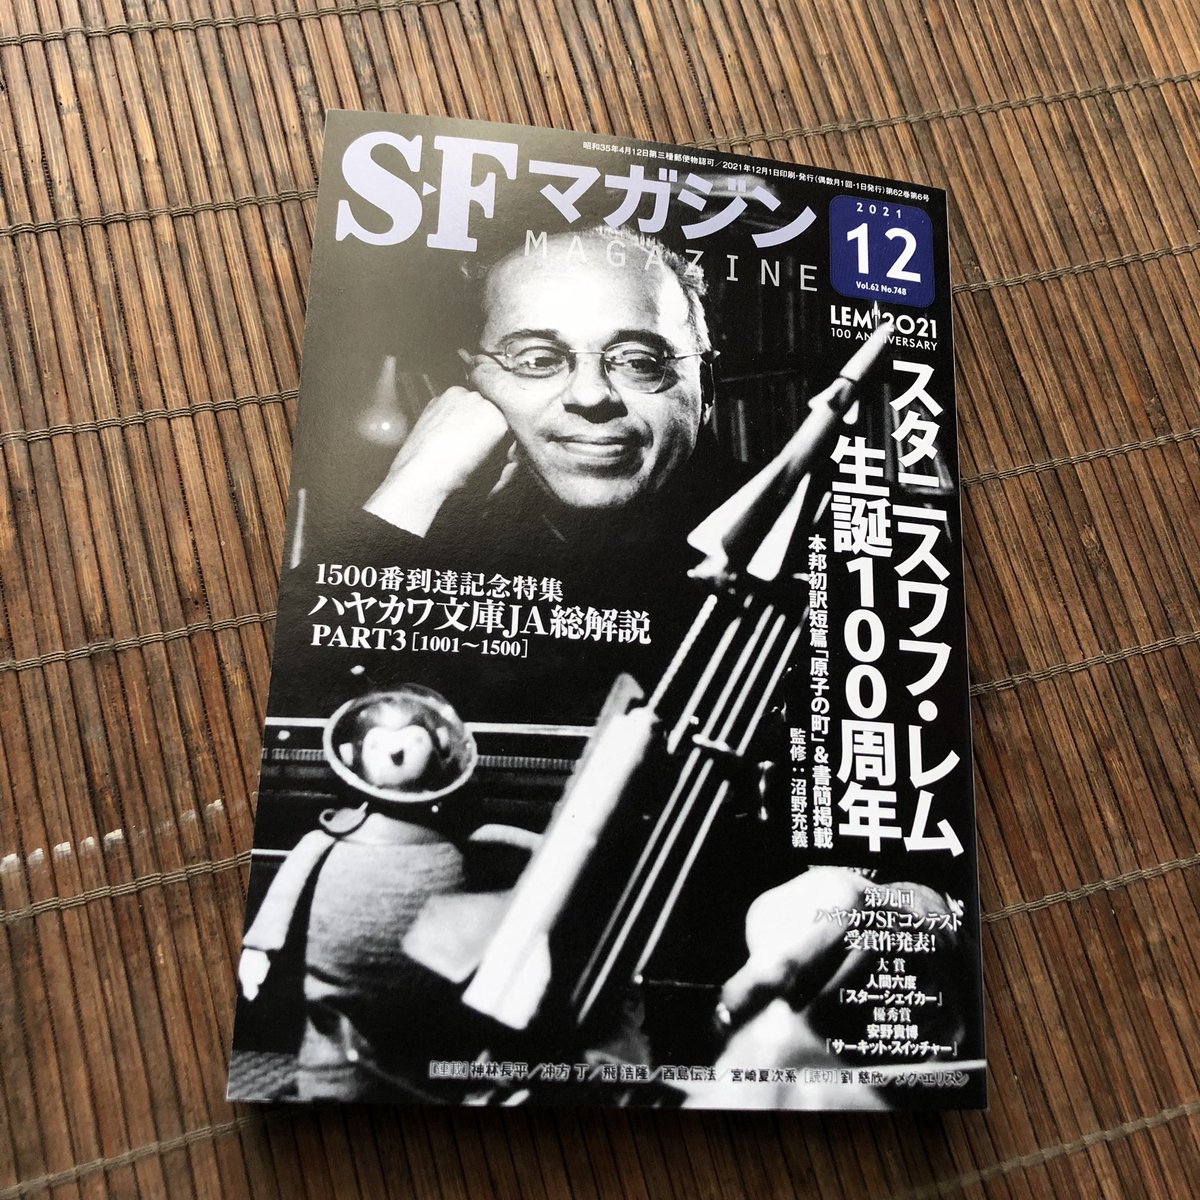 発売中の『SFマガジン』12号に、宮崎夏次系先生の最新ショート読み切りが掲載されています。タイトルは『小津の魔法使い』。 